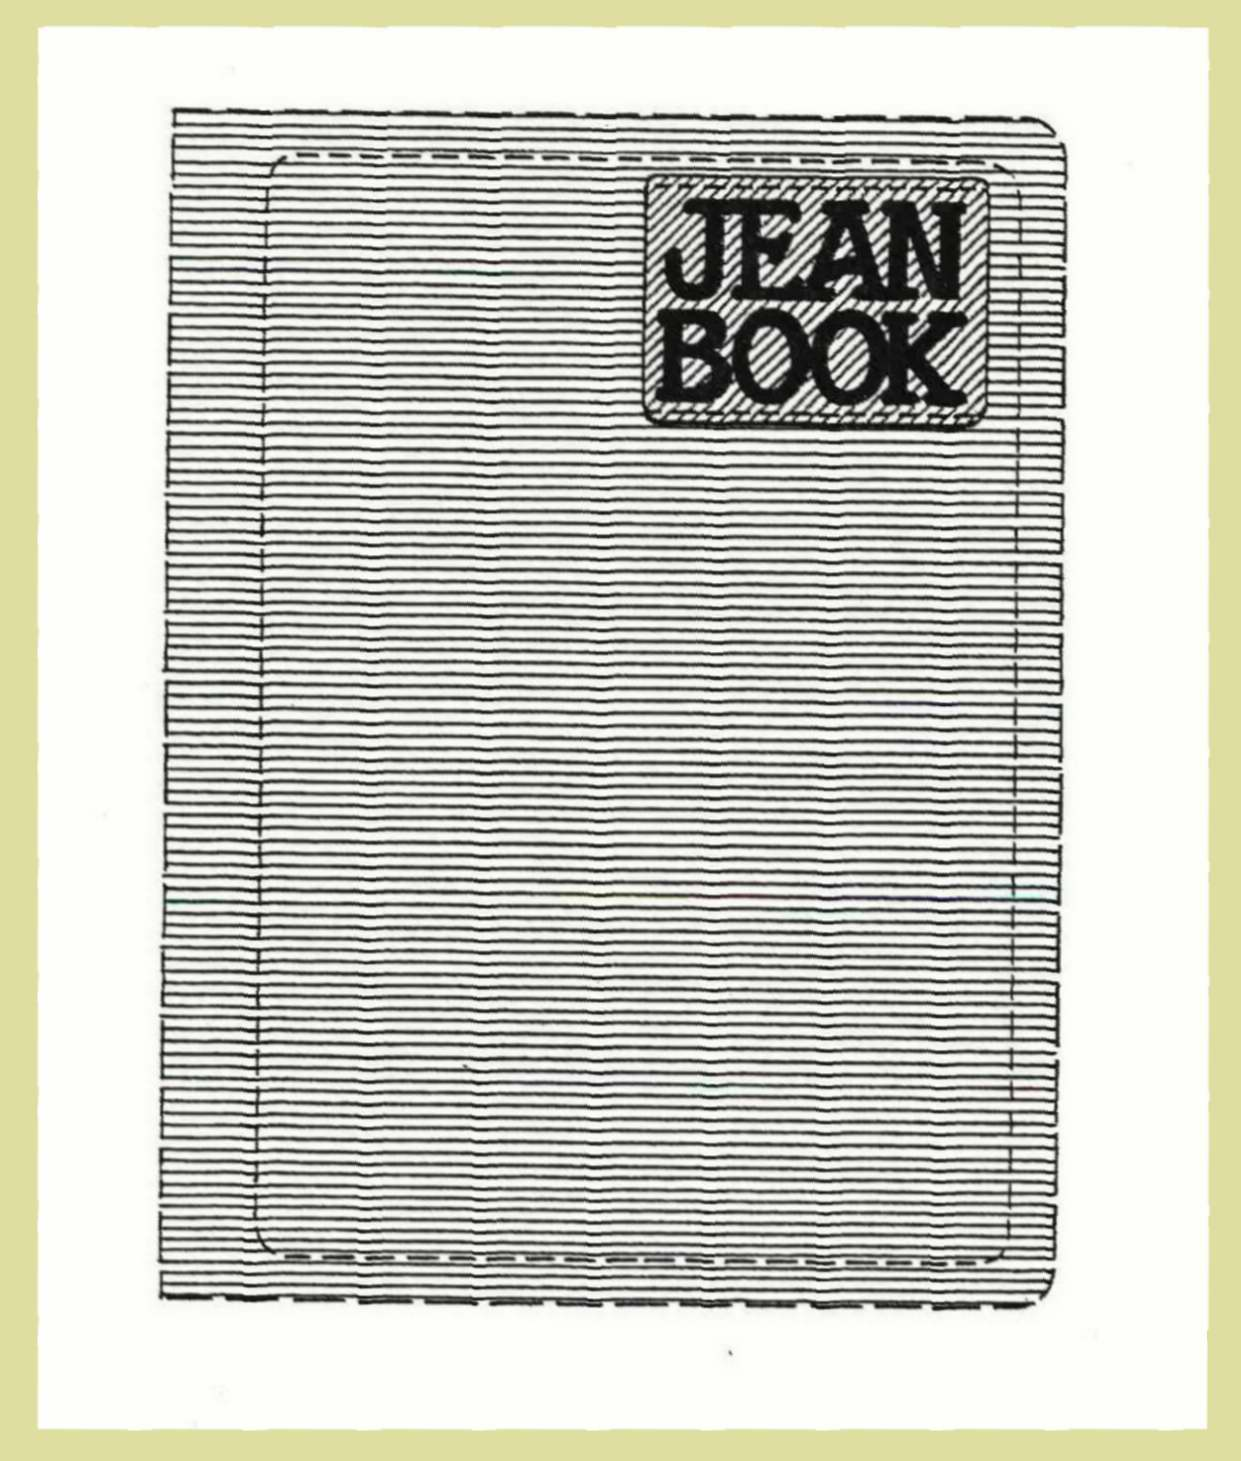 JEAN BOOK